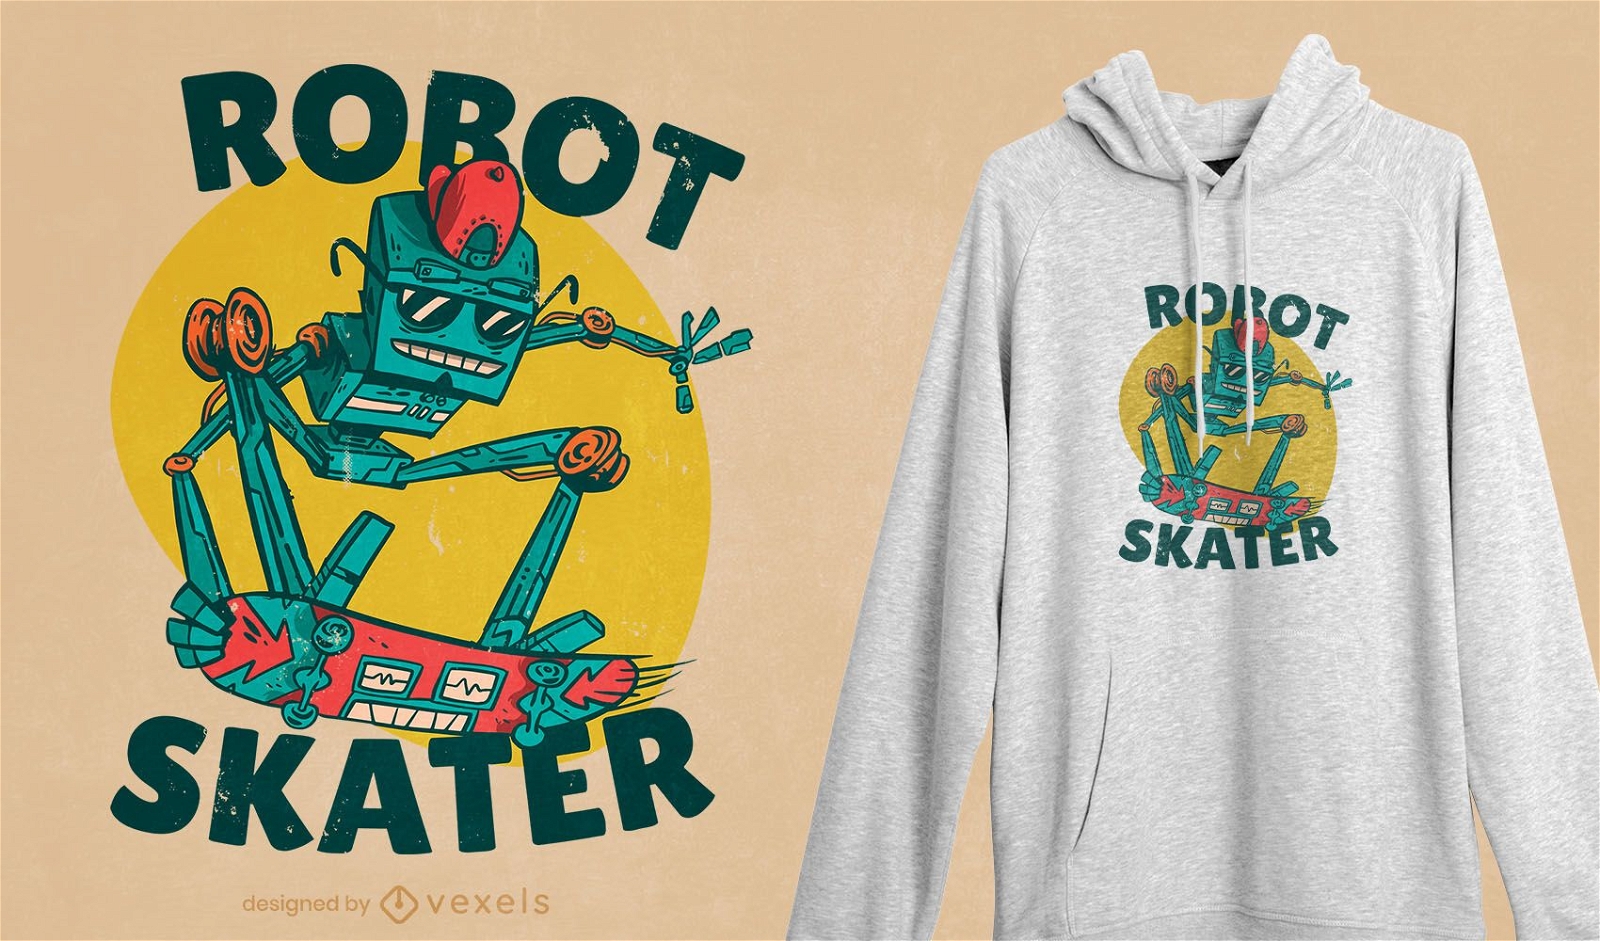 Dise?o de camiseta robot skater.